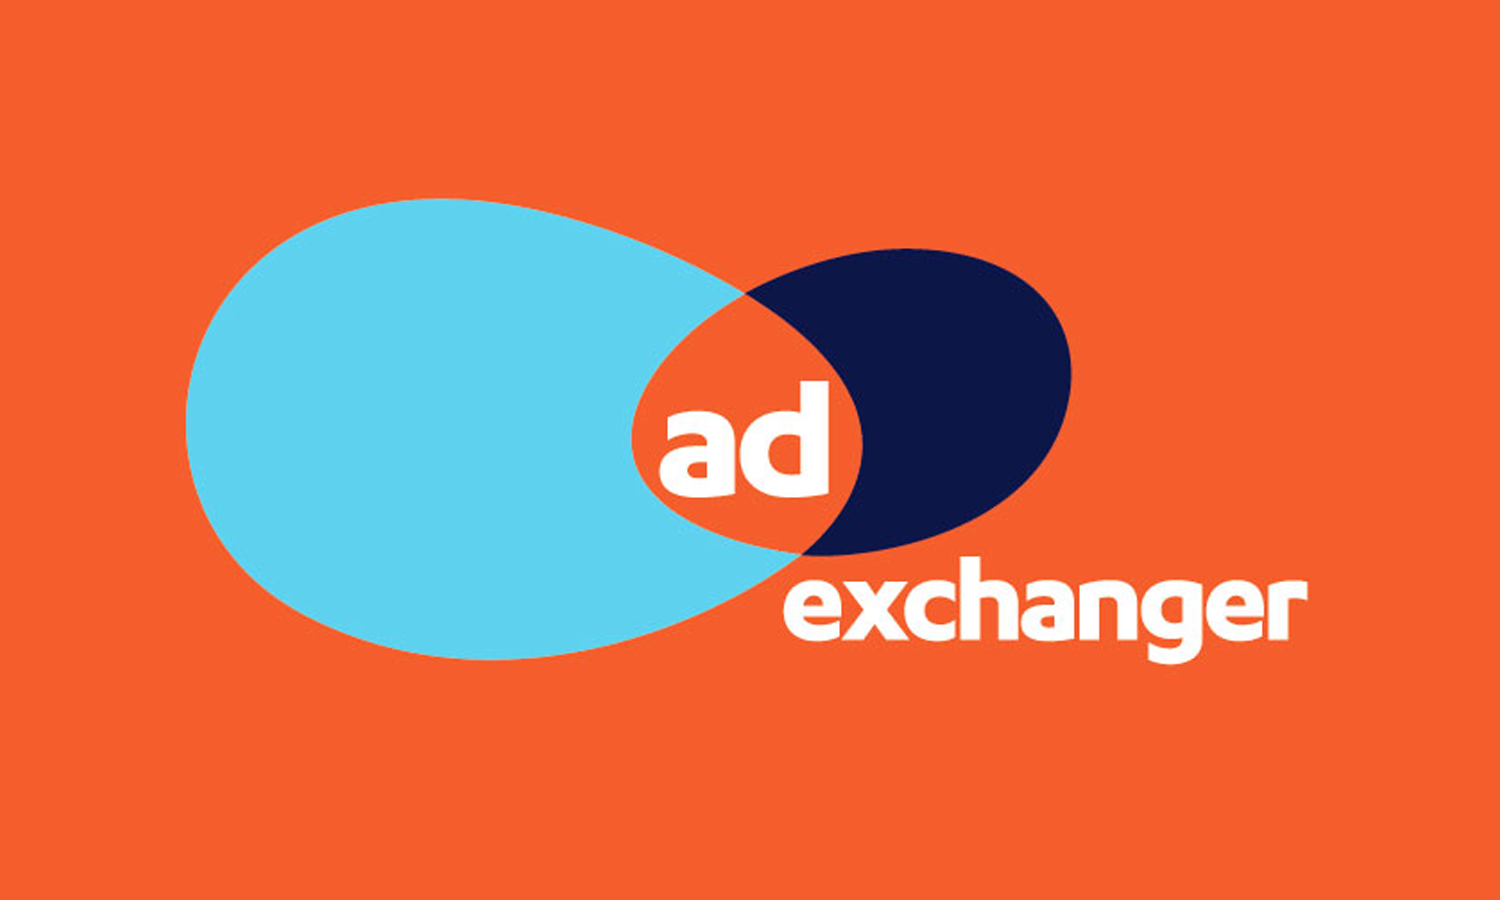 Ad_Exchanger_Zeta_Global_online_advertising